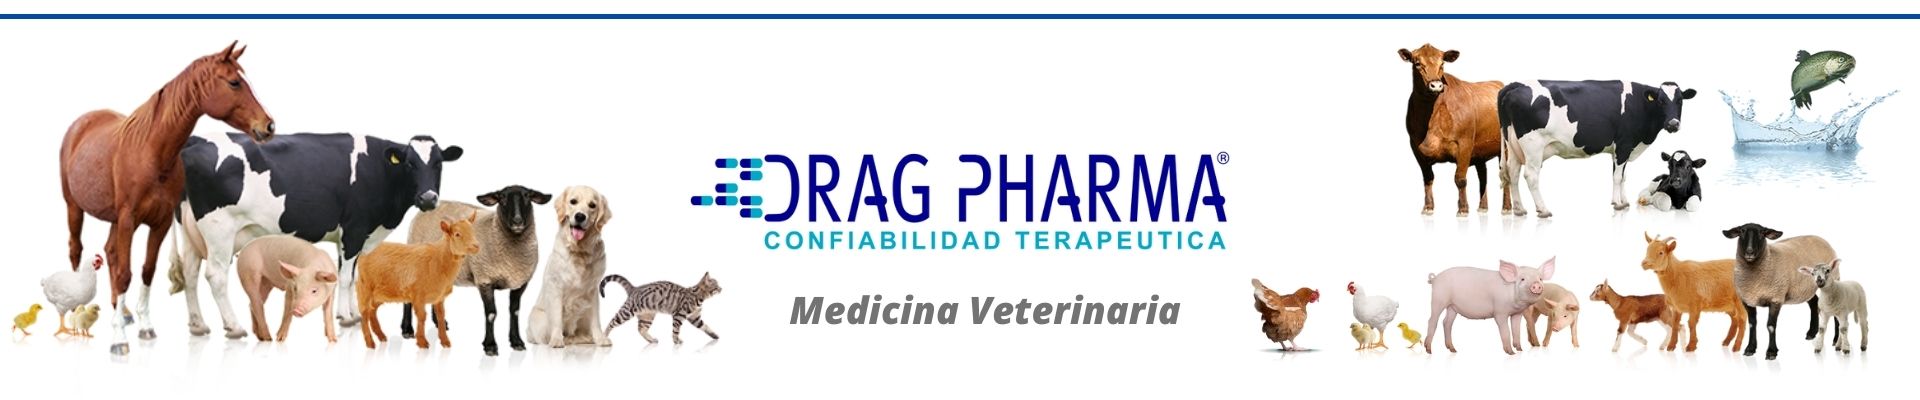 Banner Laboratorio Drag Pharma Chile Invetec